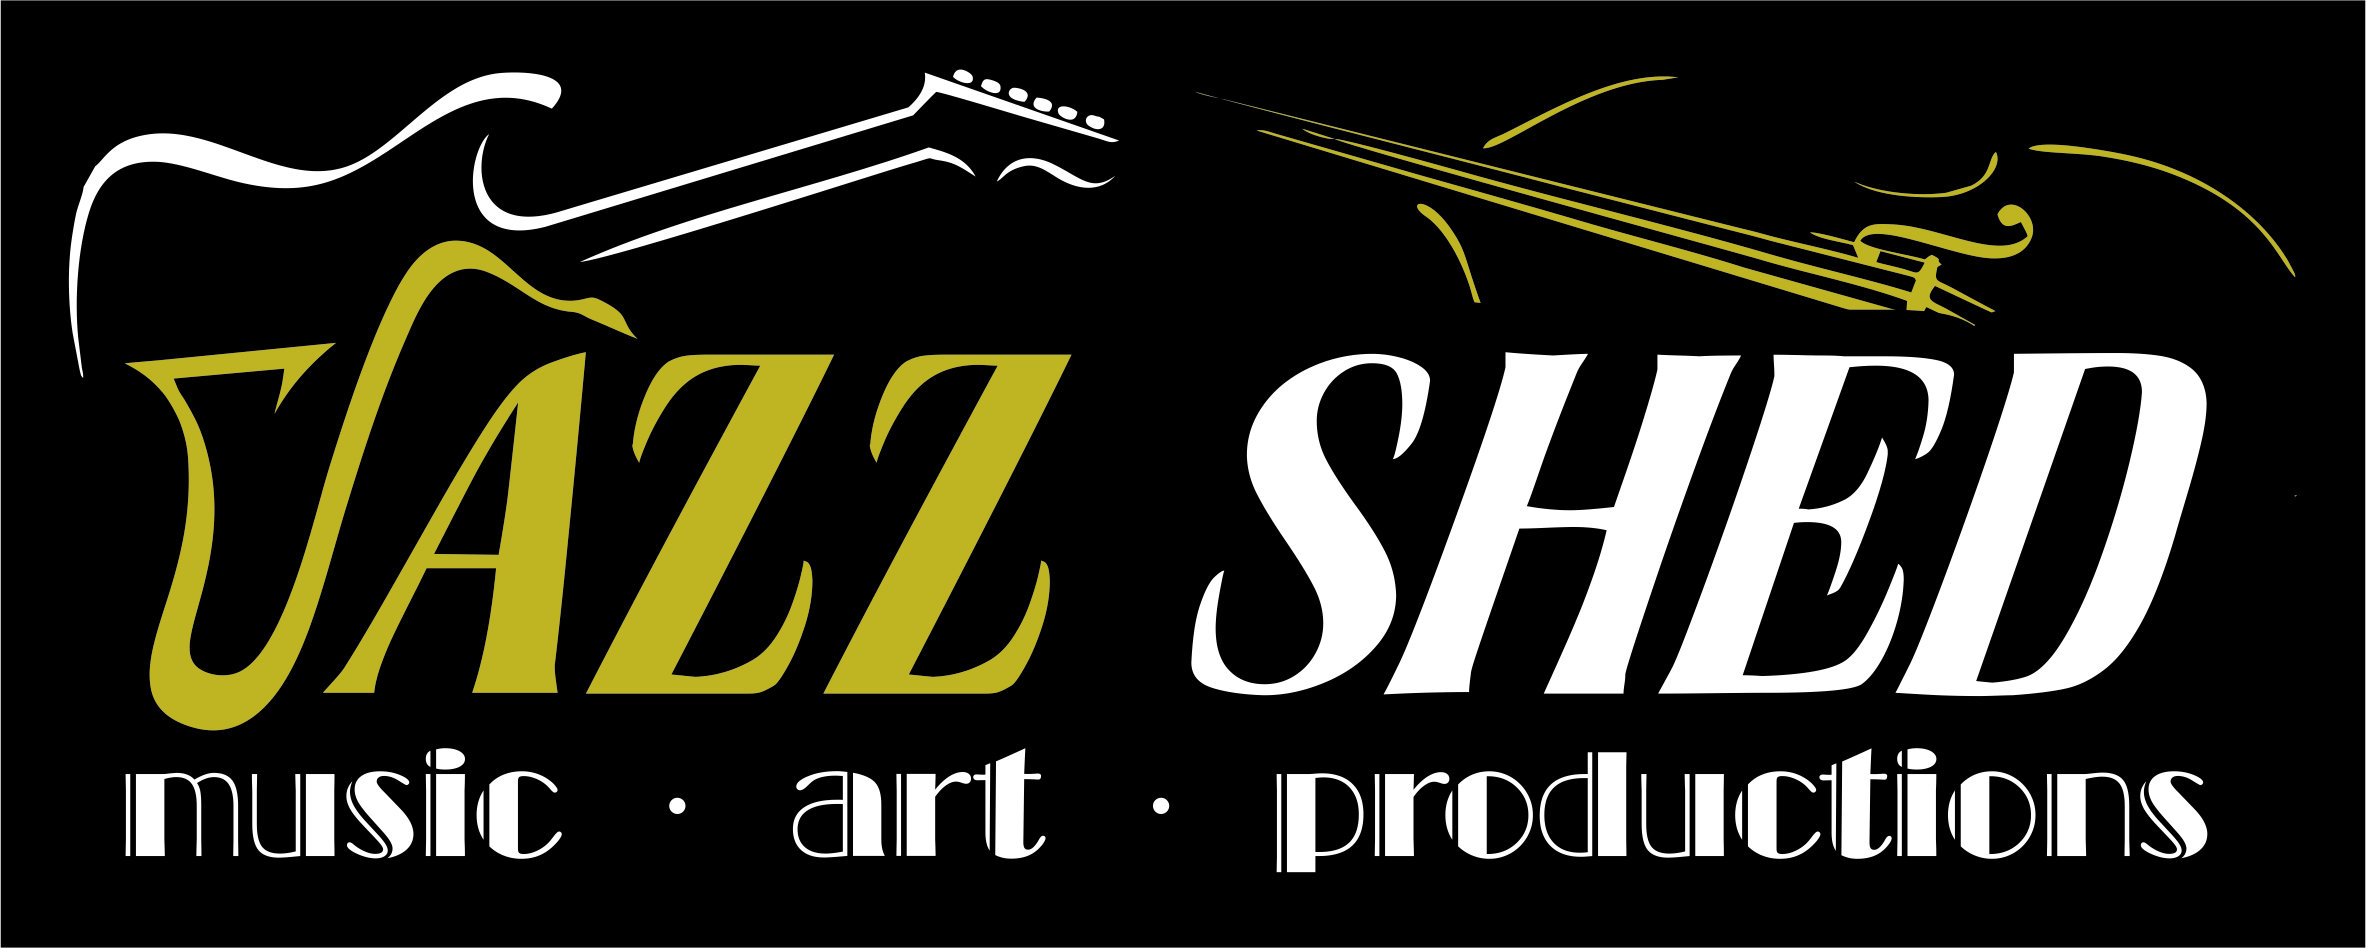 Jazz Shed Studios